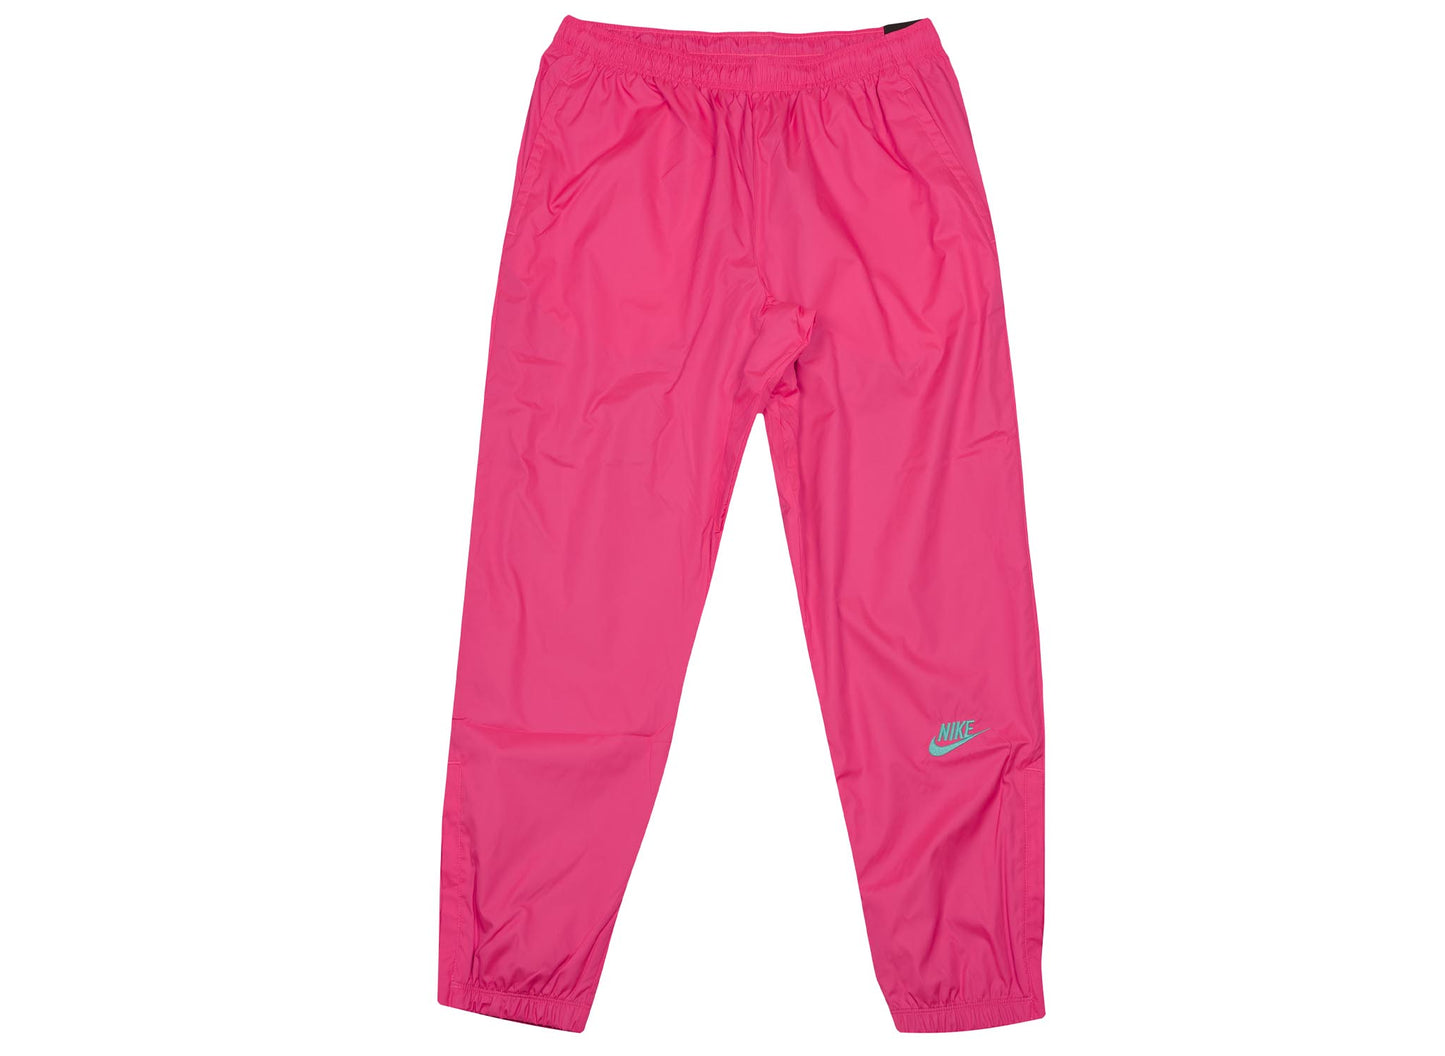 atmos x Nike Pants - Pink